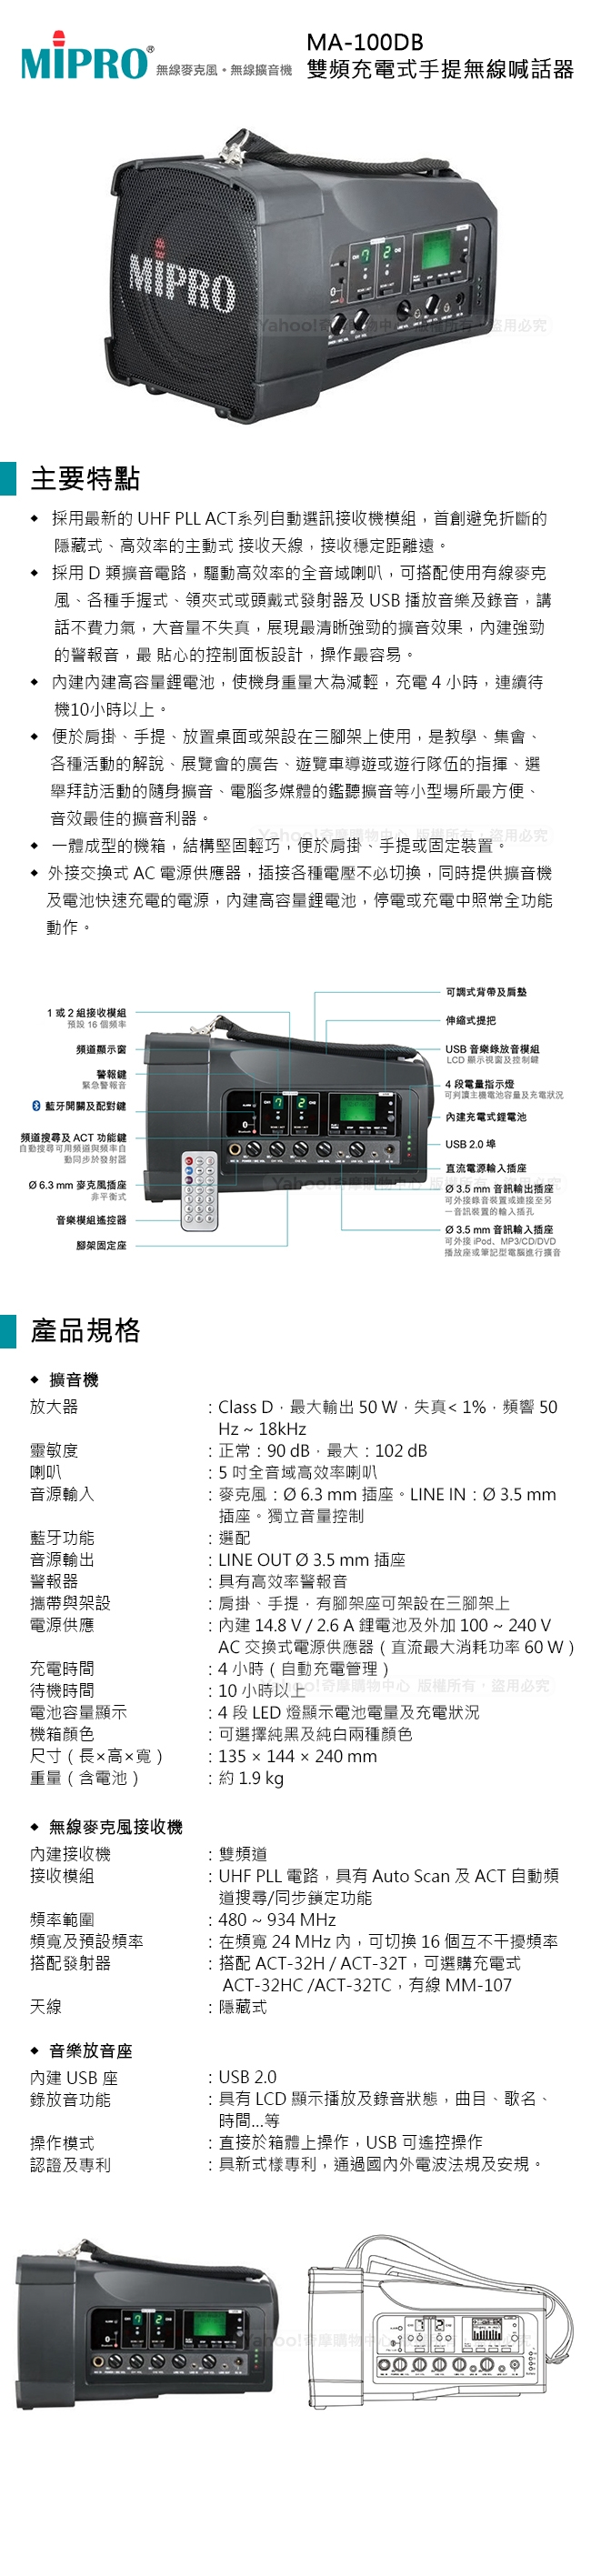 嘉強 MIPRO MA-100DB 雙頻充電式手提無線喊話器(有USB)